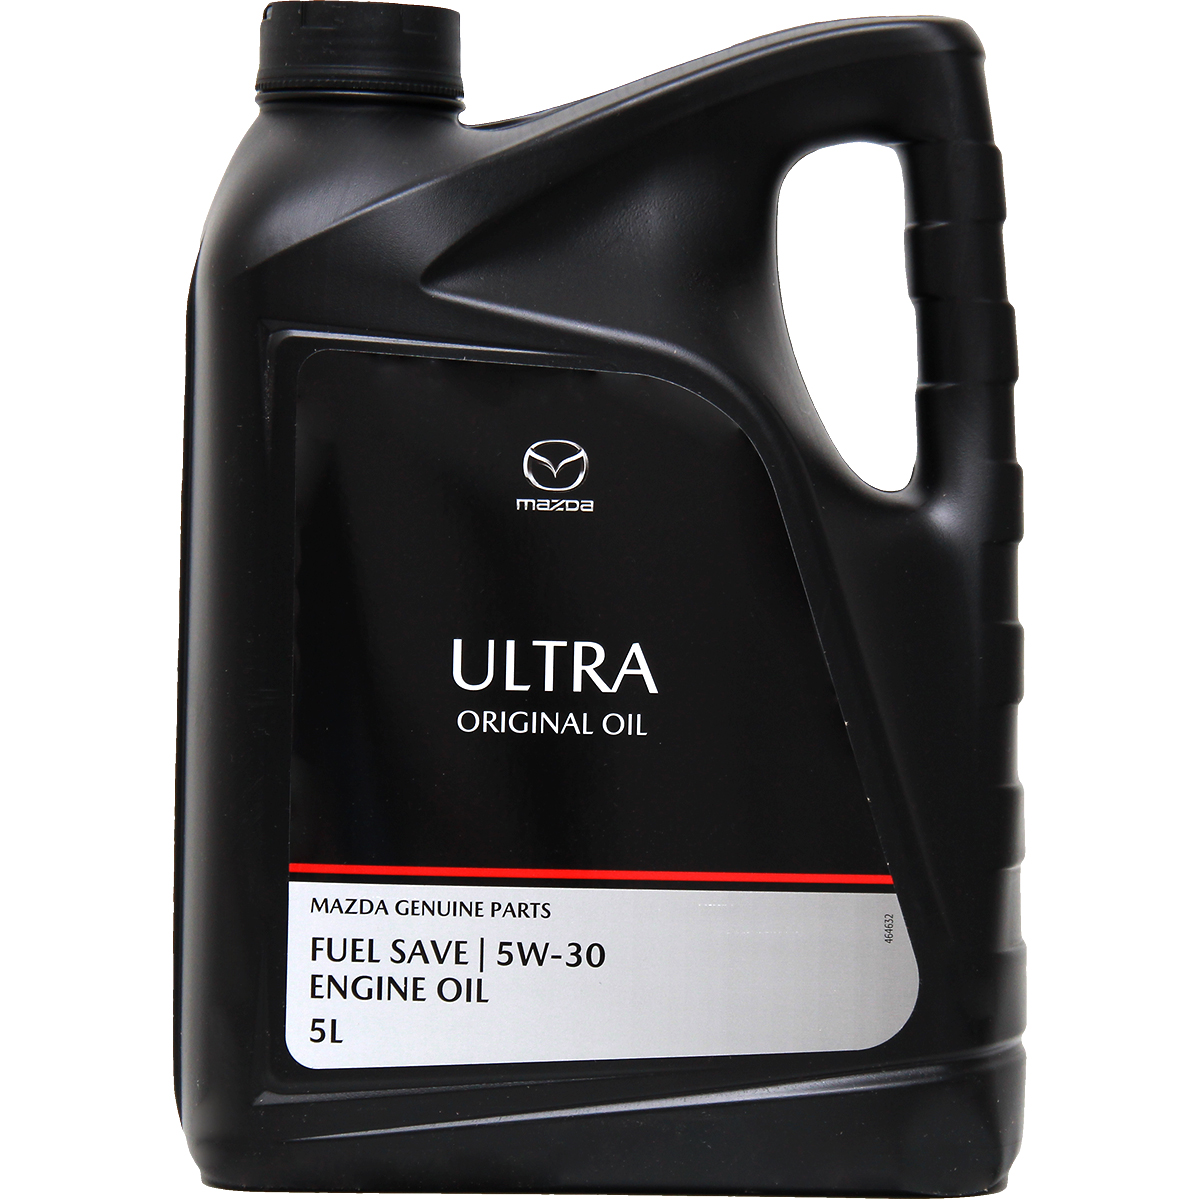 Mazda Original Oil Ultra 5W-30 5 Liter